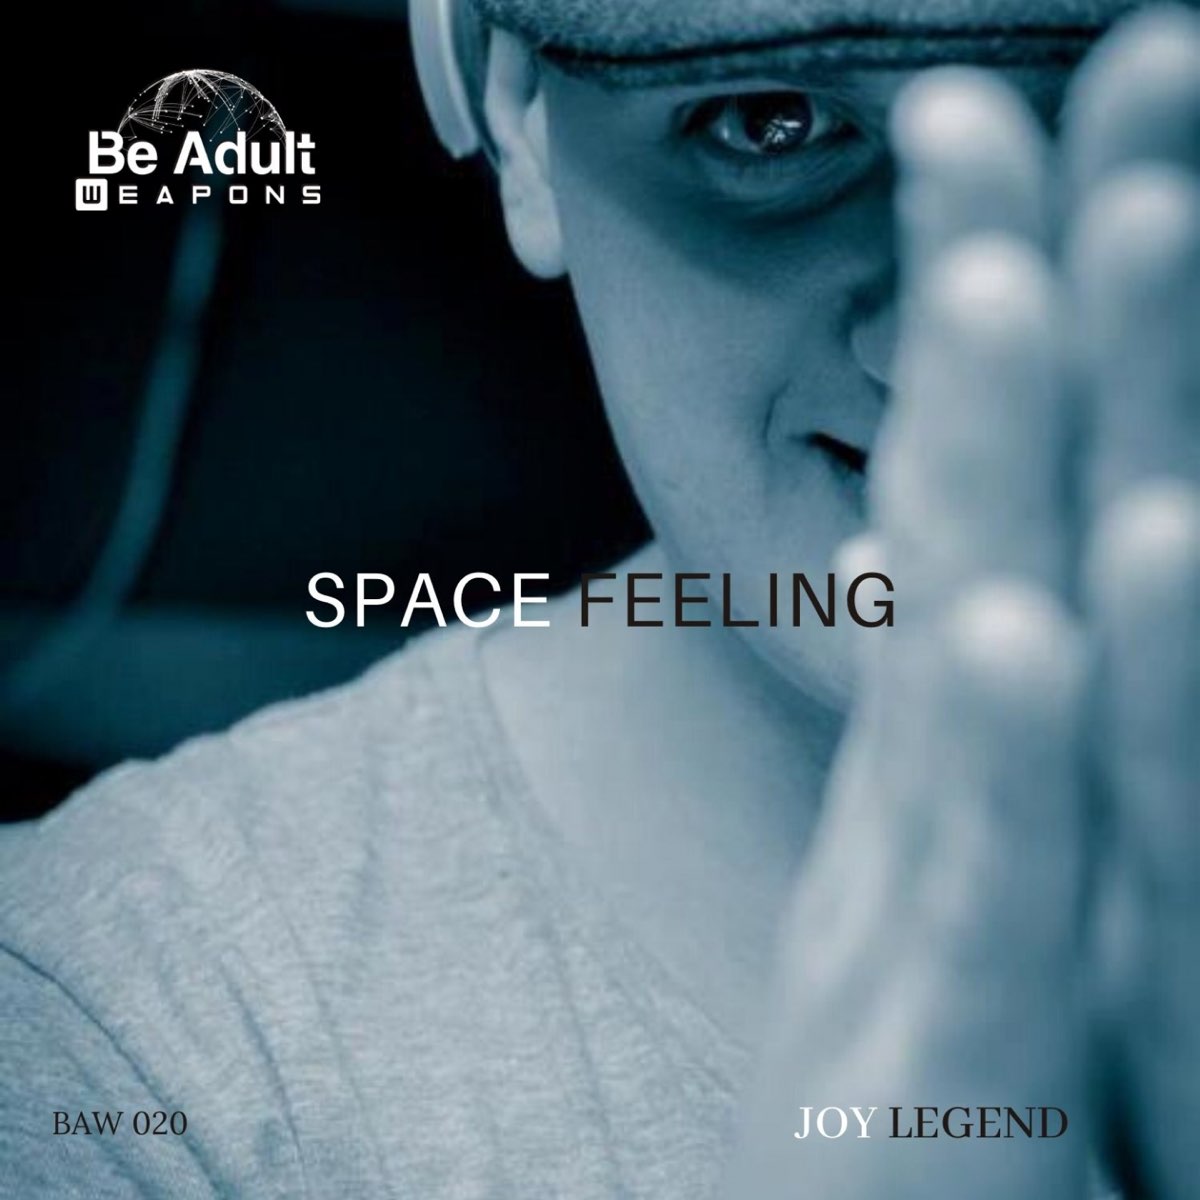 Feeling the space. Joy Legend. Joy feeling. Space of Joy 2006. Space of Joy 2007.